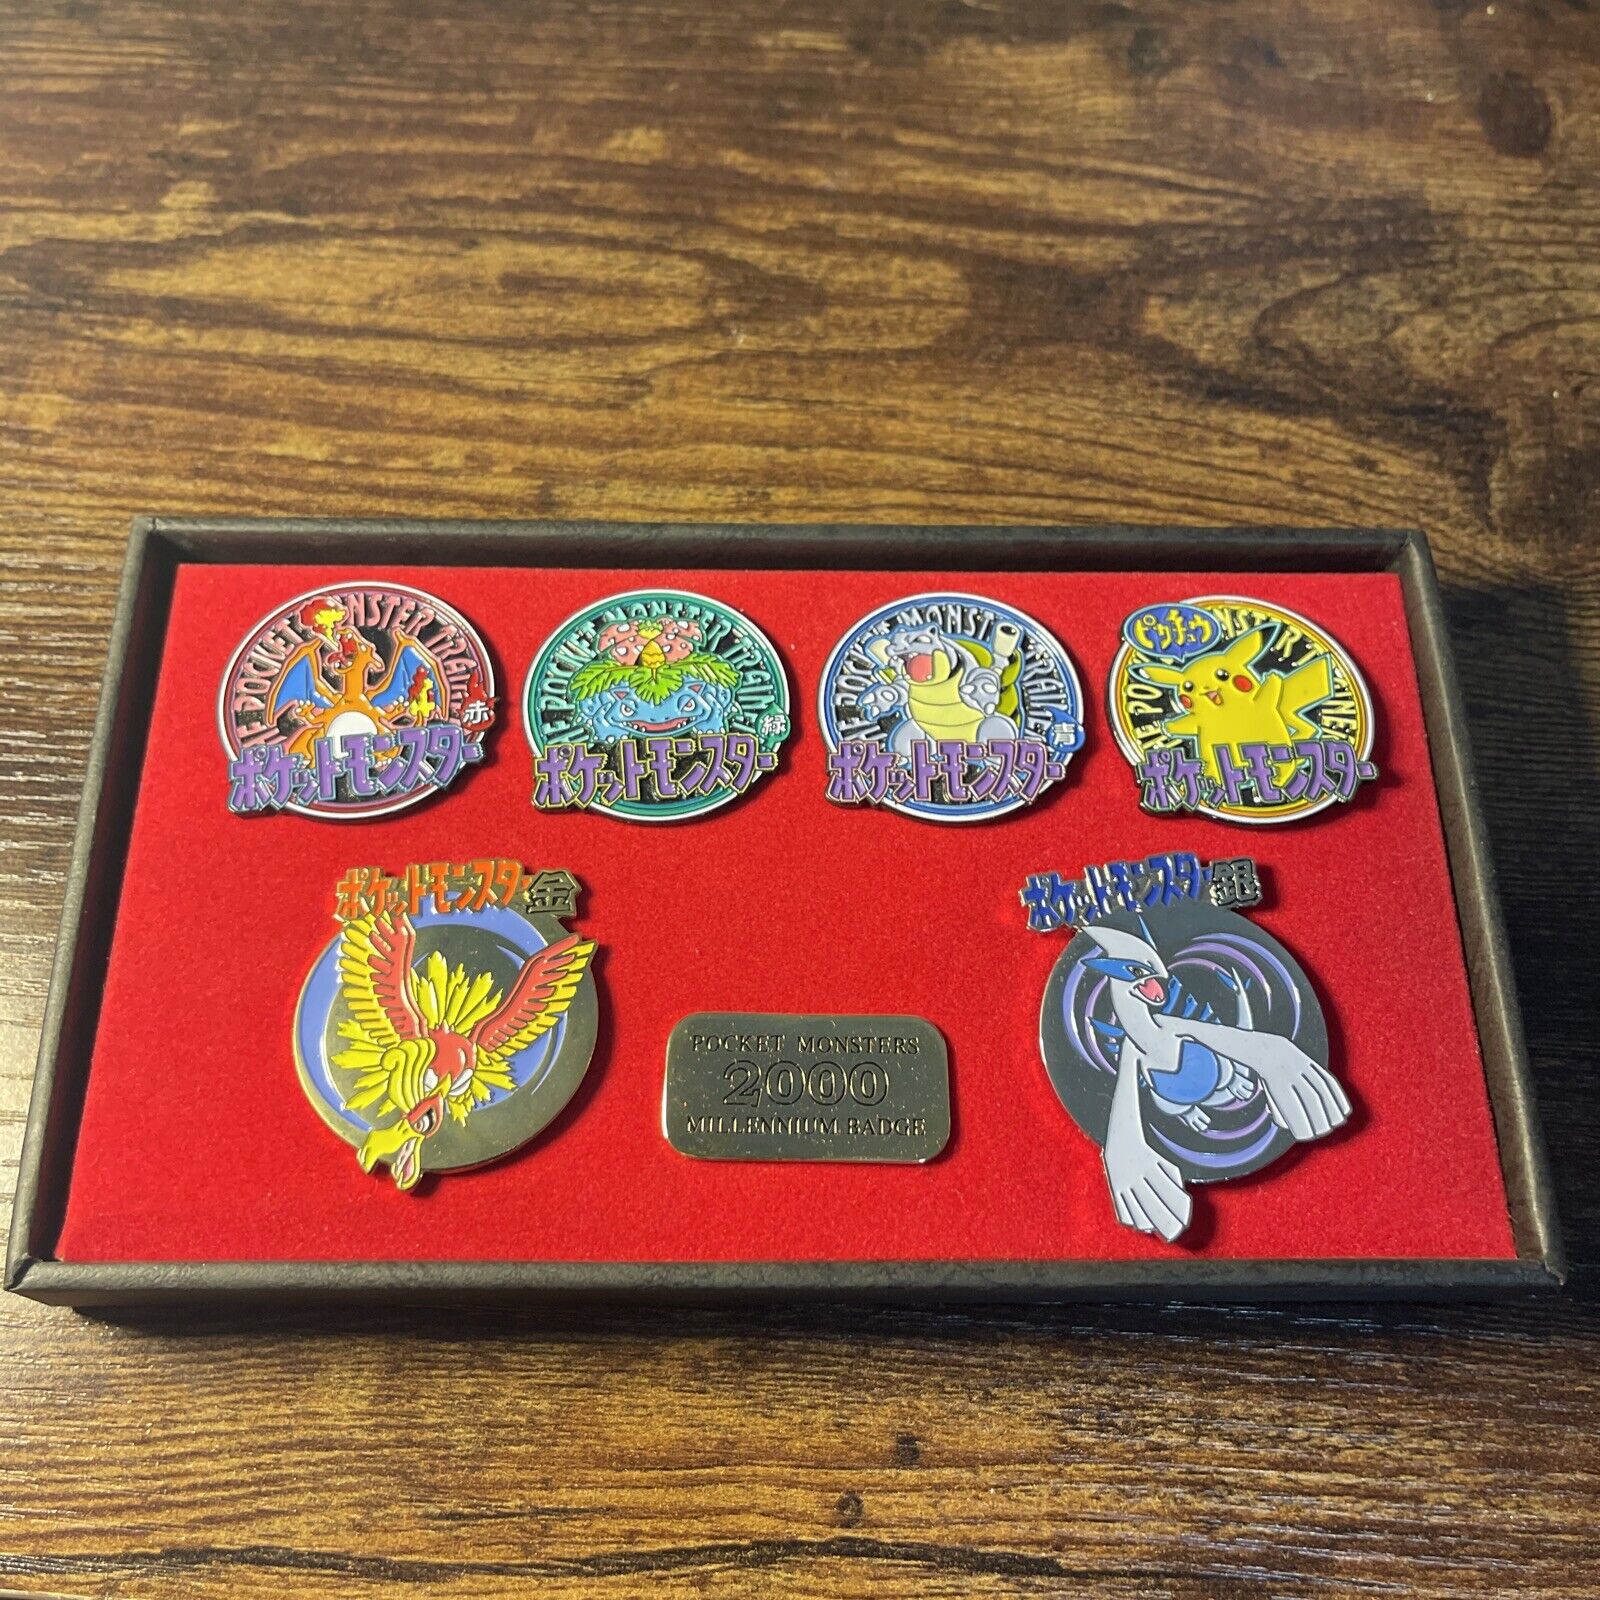 Medire Factory Pocket Monster Pokemon Millennium Badge 2000 USA SELLER